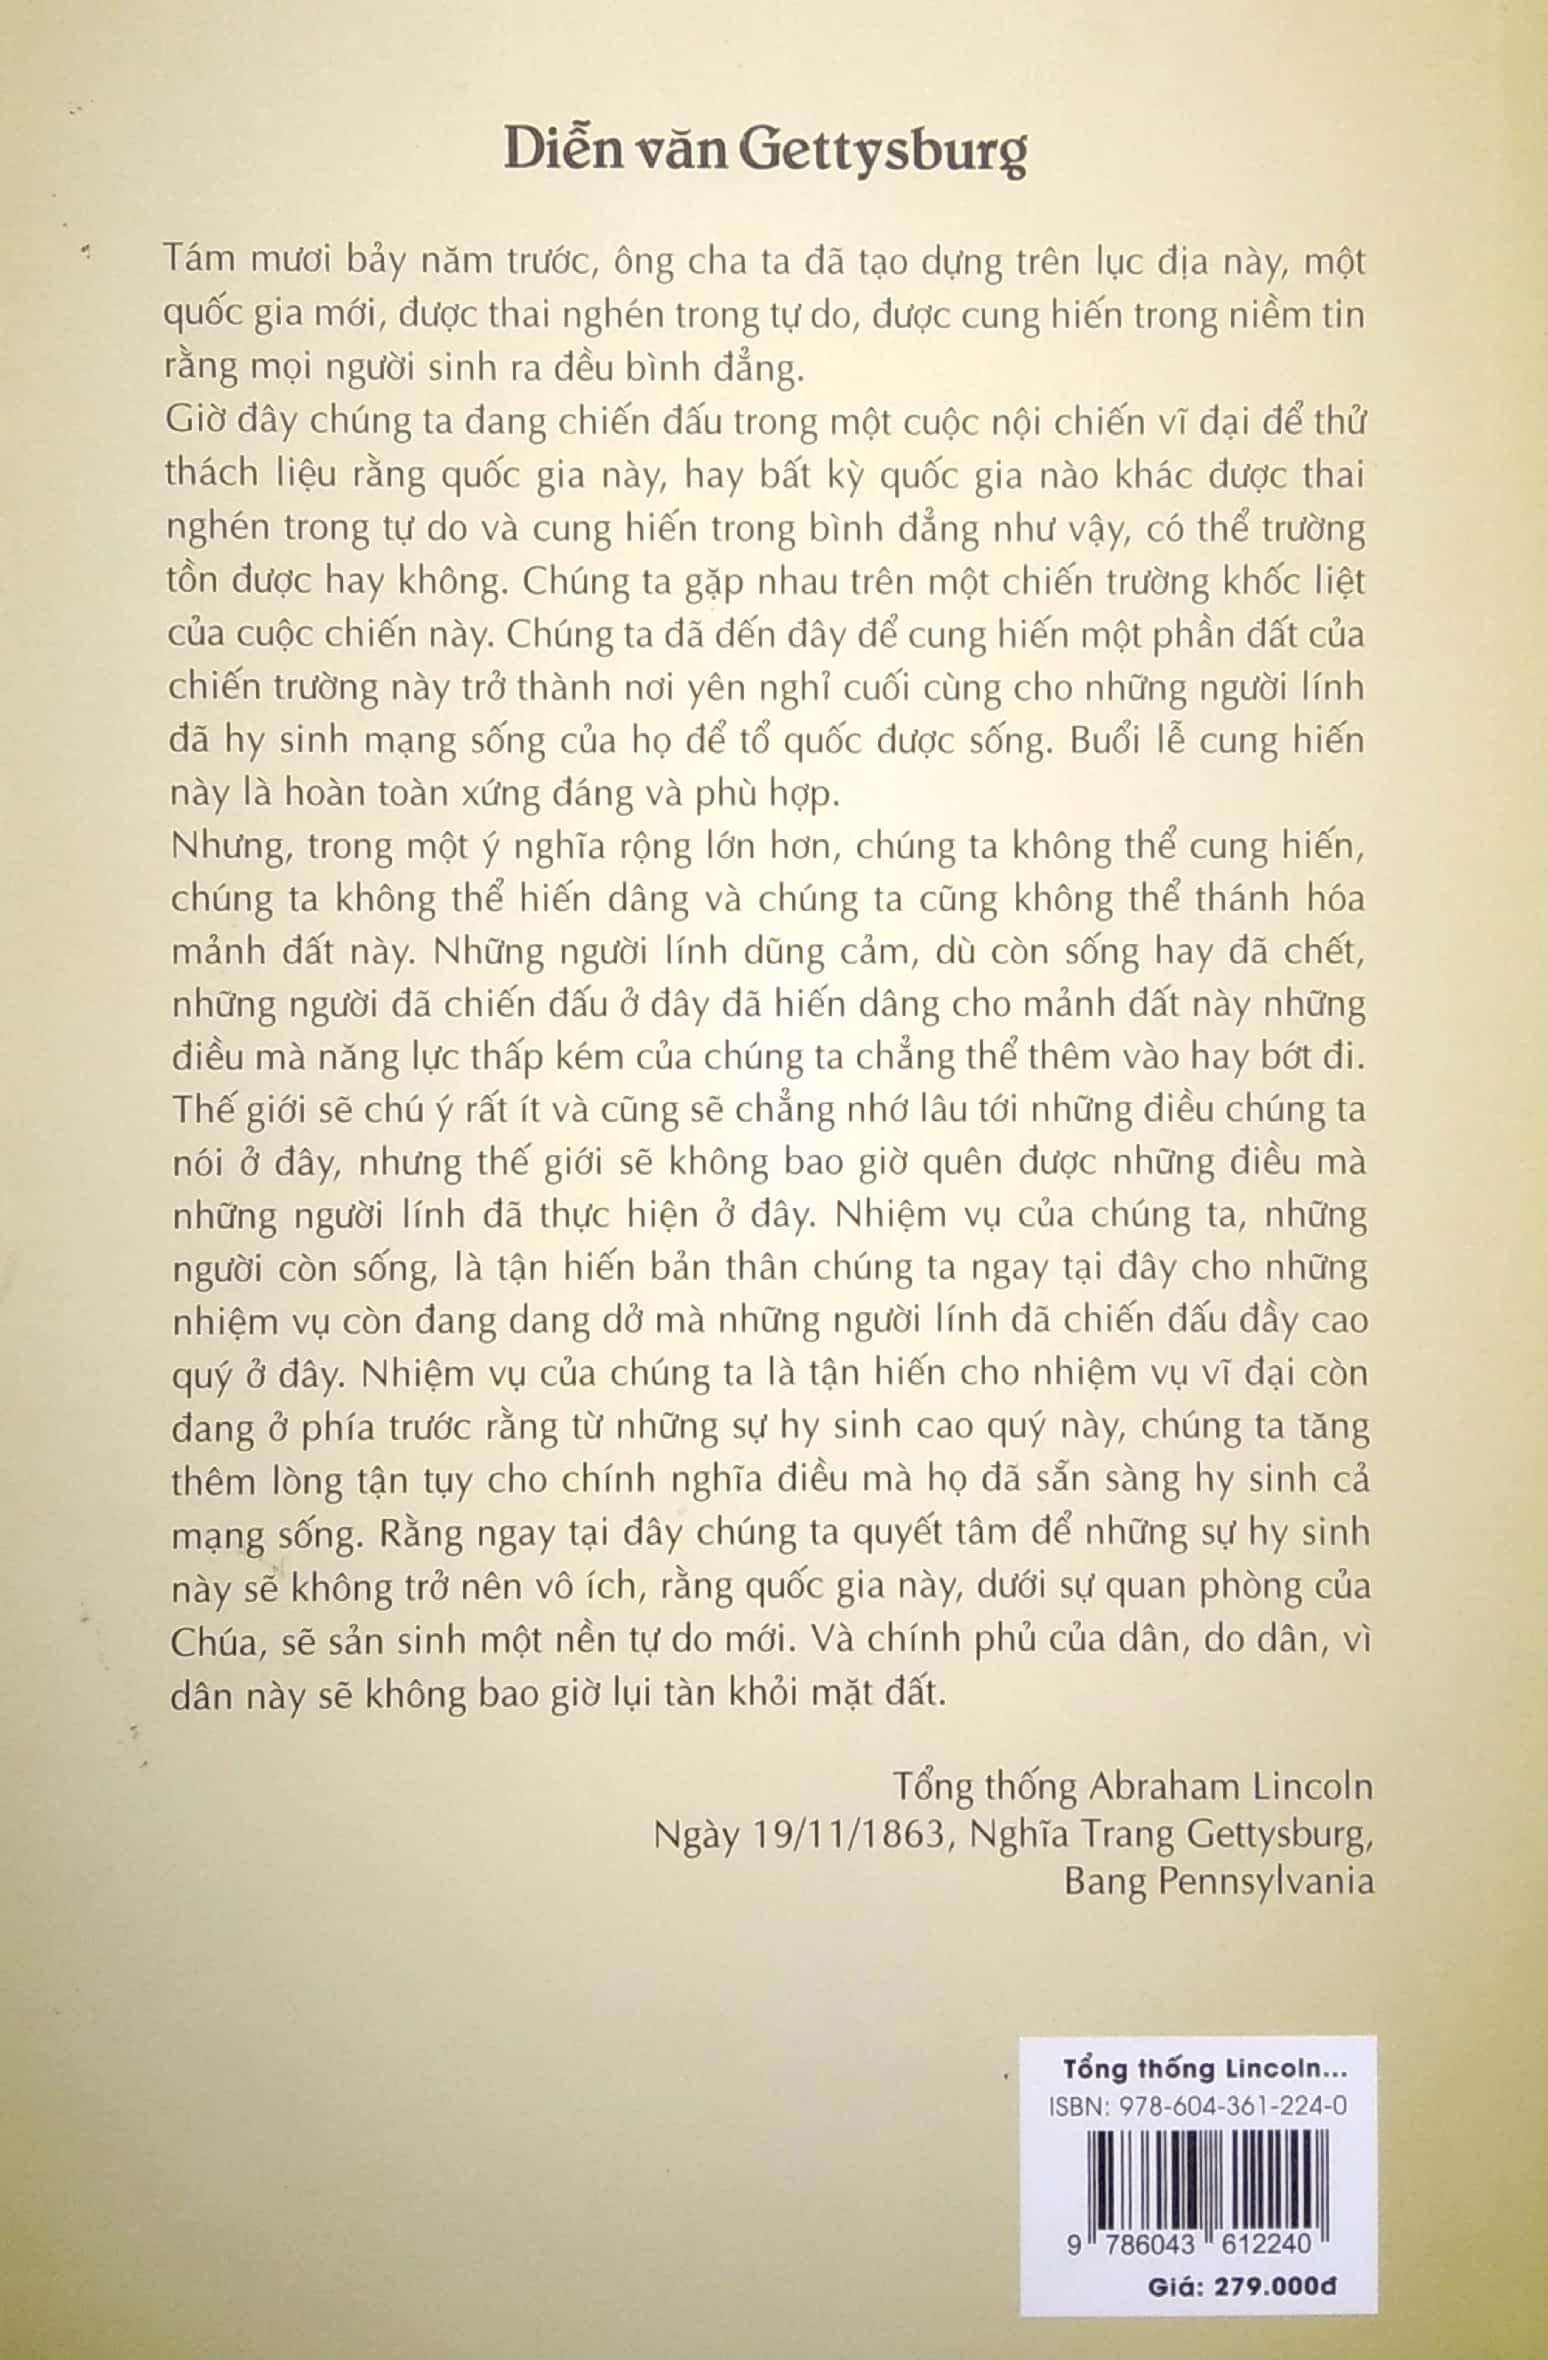 Tổng Thống Lincoln Và Những Điều Bạn Chưa Biết (Song Ngữ Anh Việt) - Dale Carnegie - Trần Vũ Đức dịch - (bìa mềm)